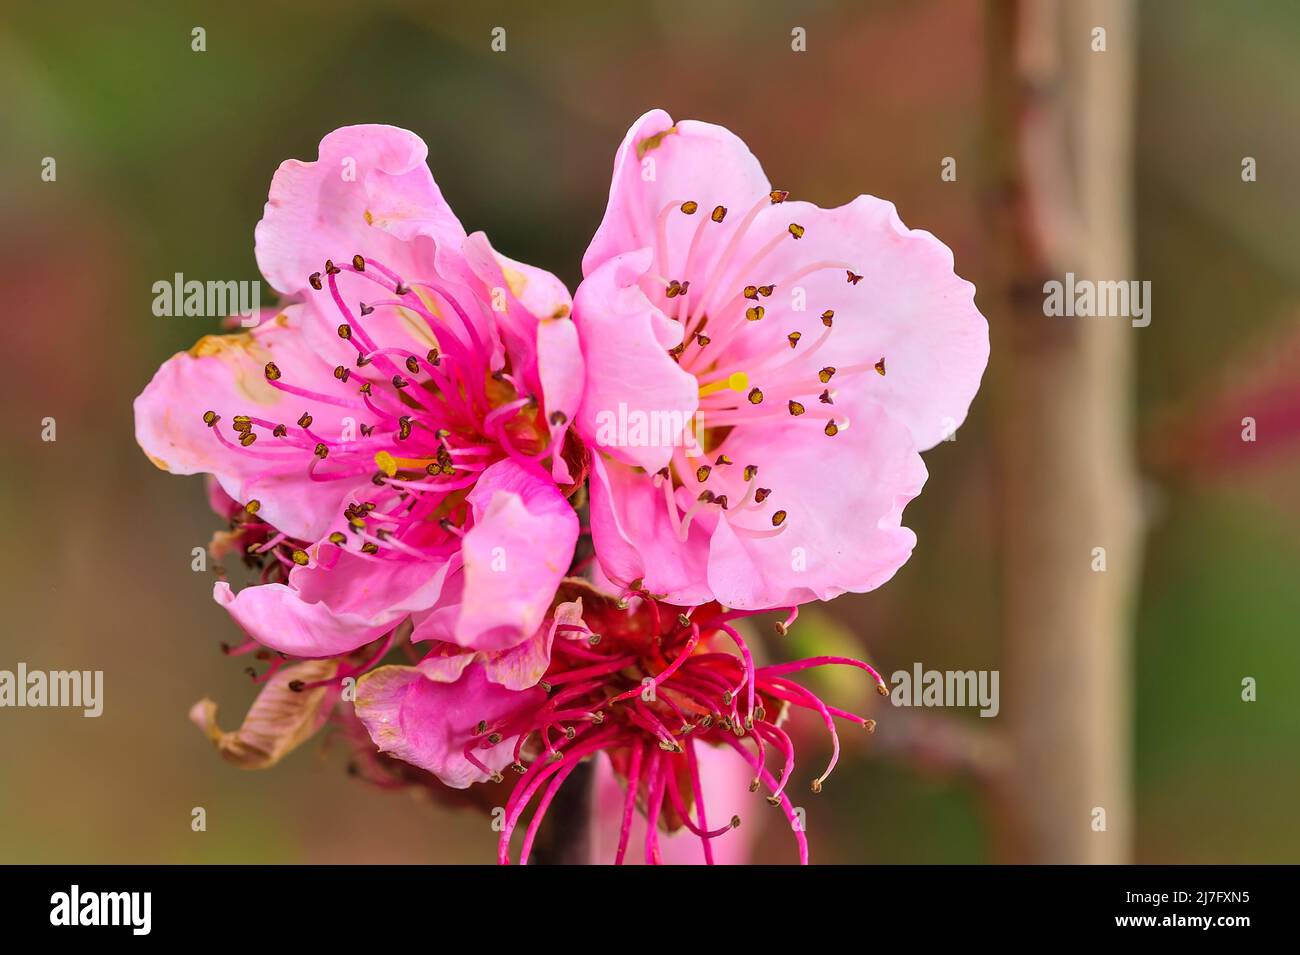 La flor del melocotón - tiene varios pétalos de dos colores, rojo pálido y blanco Foto de stock